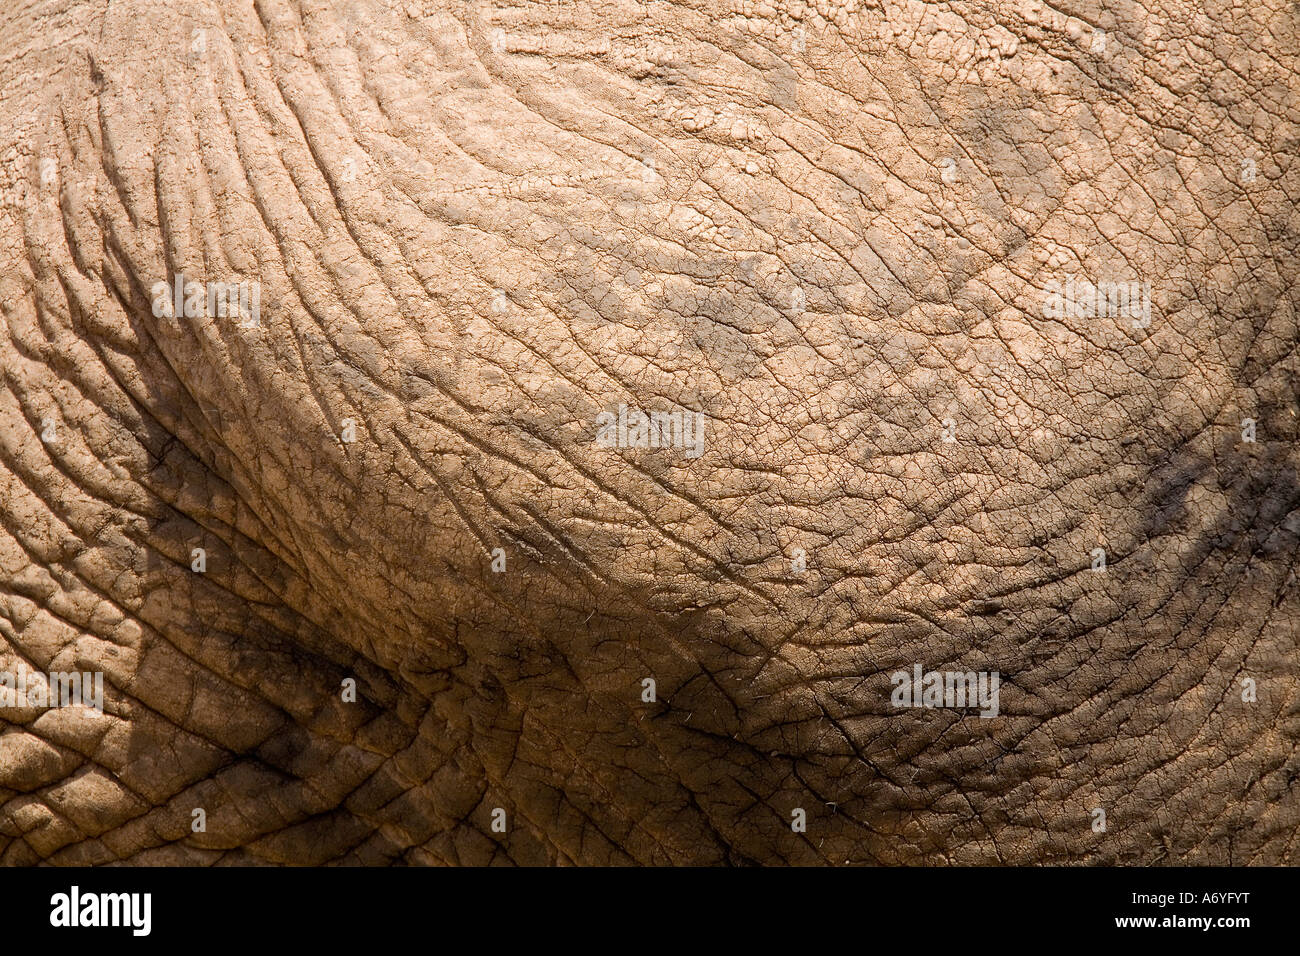 Close up of elephant skin Stock Photo